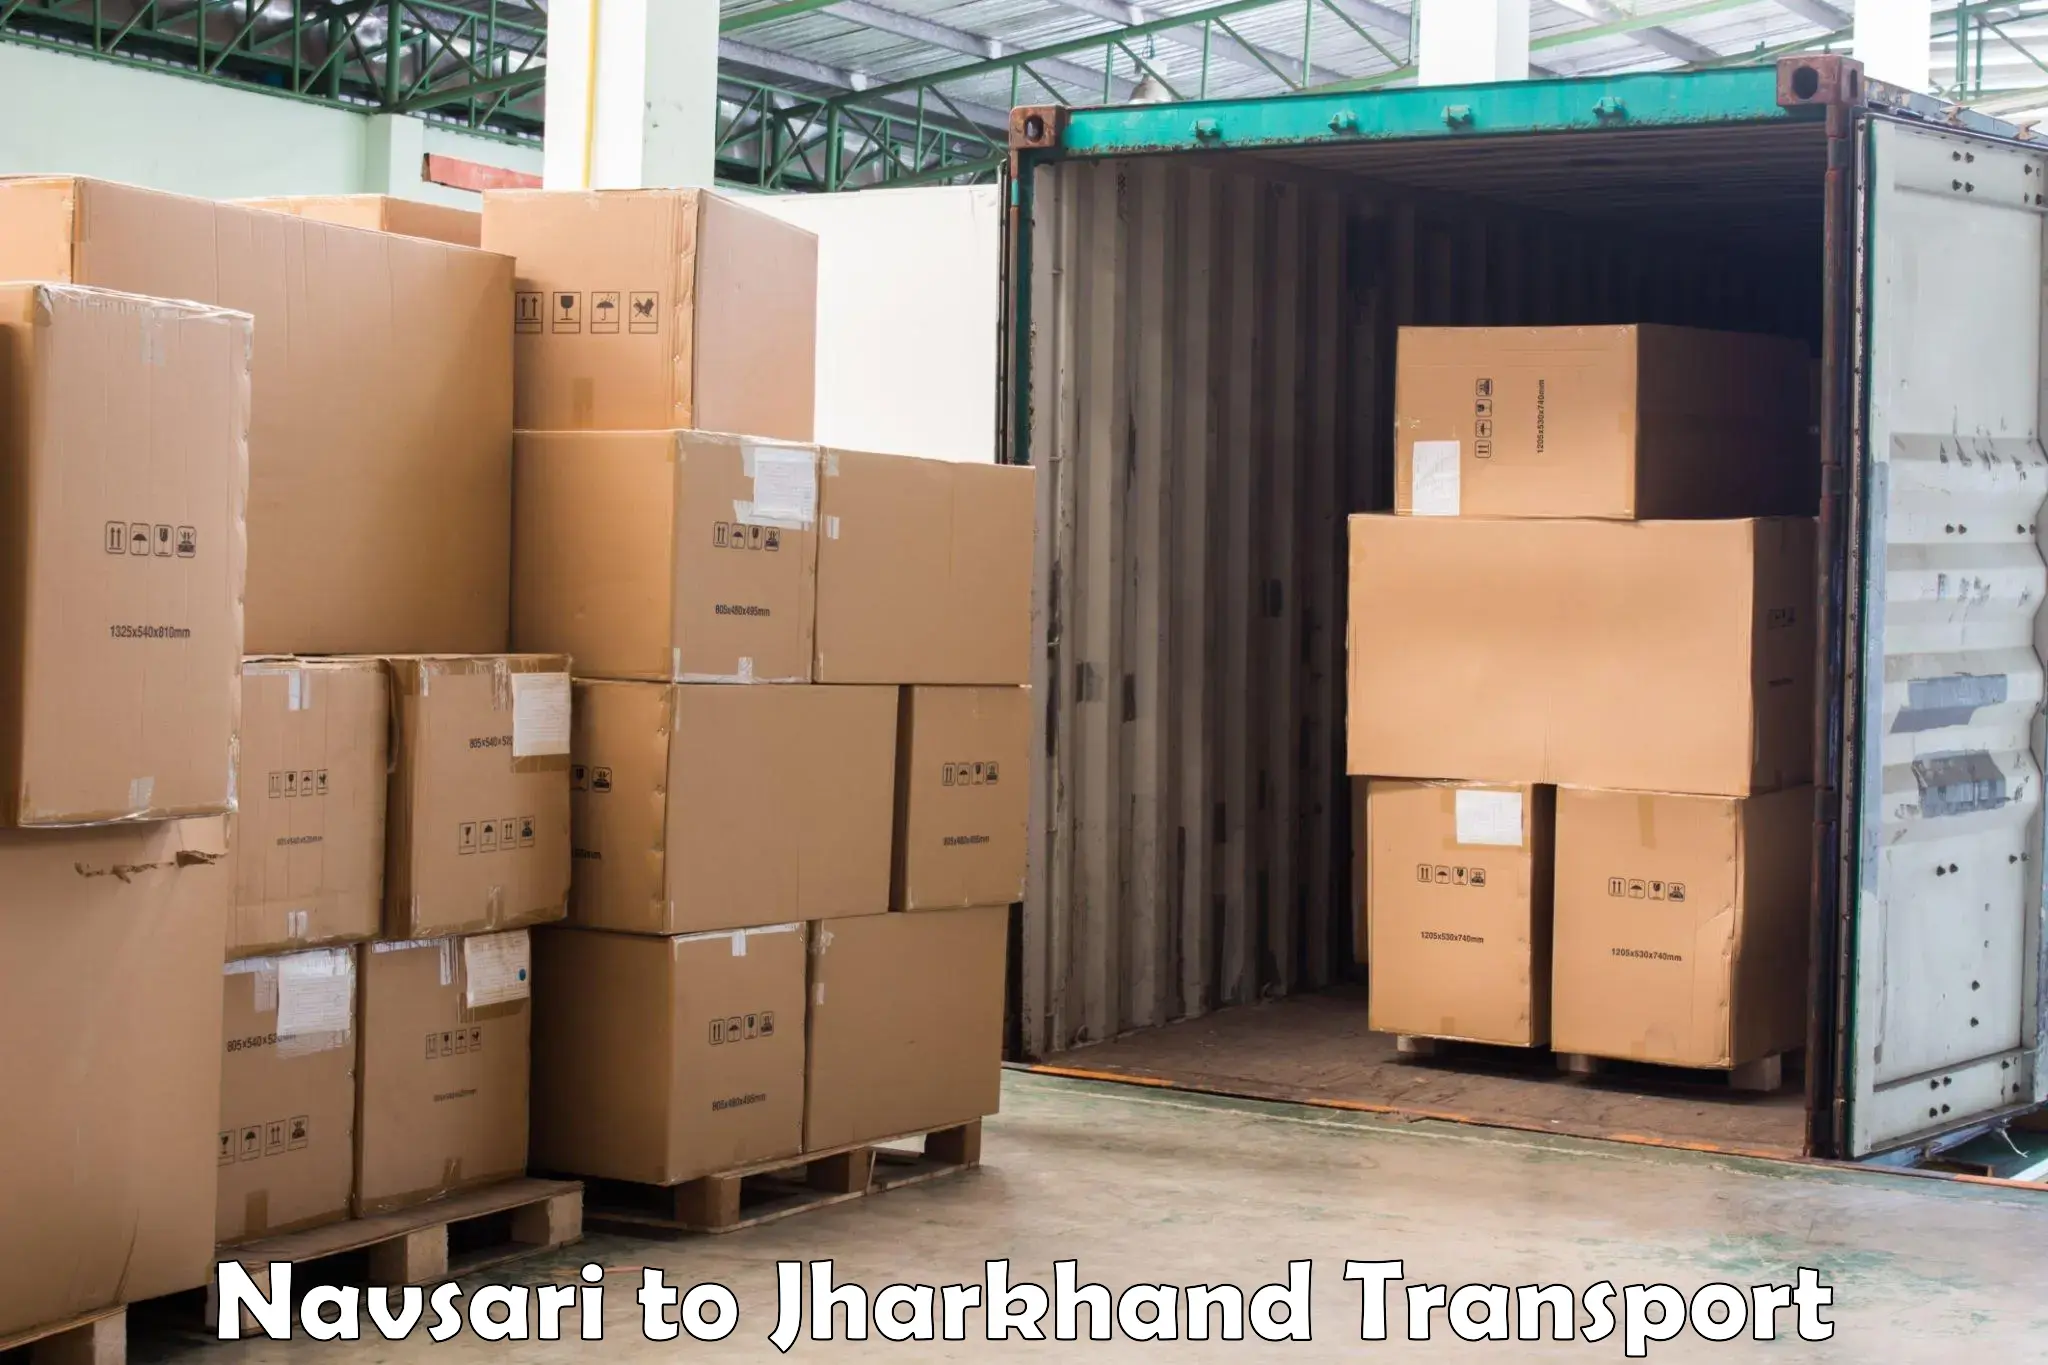 Two wheeler parcel service Navsari to Godda